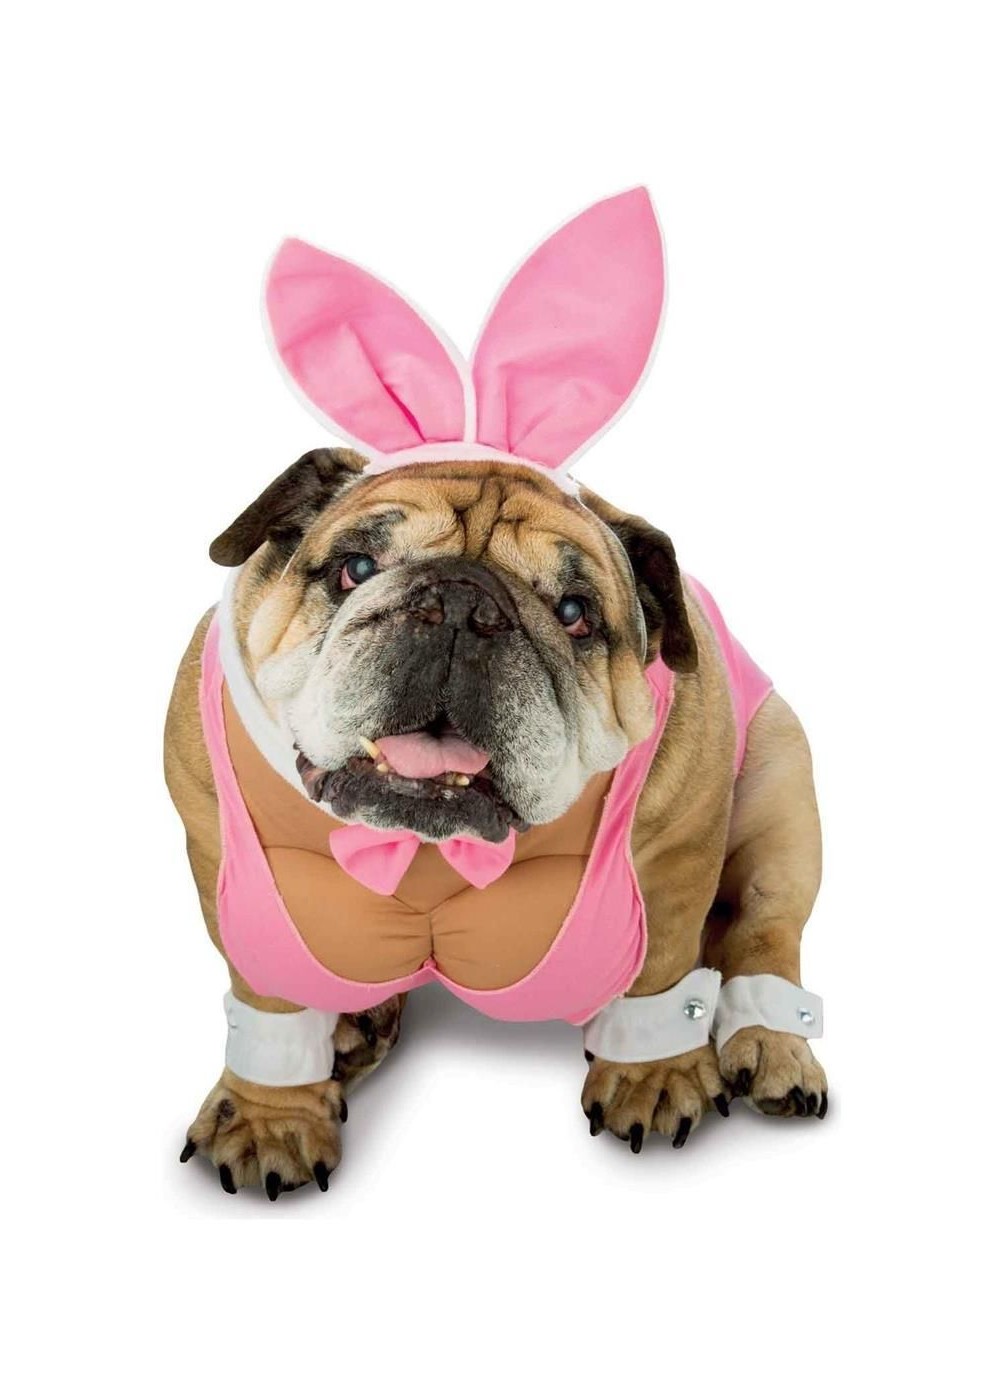 Hunny Bunny Dog Costume